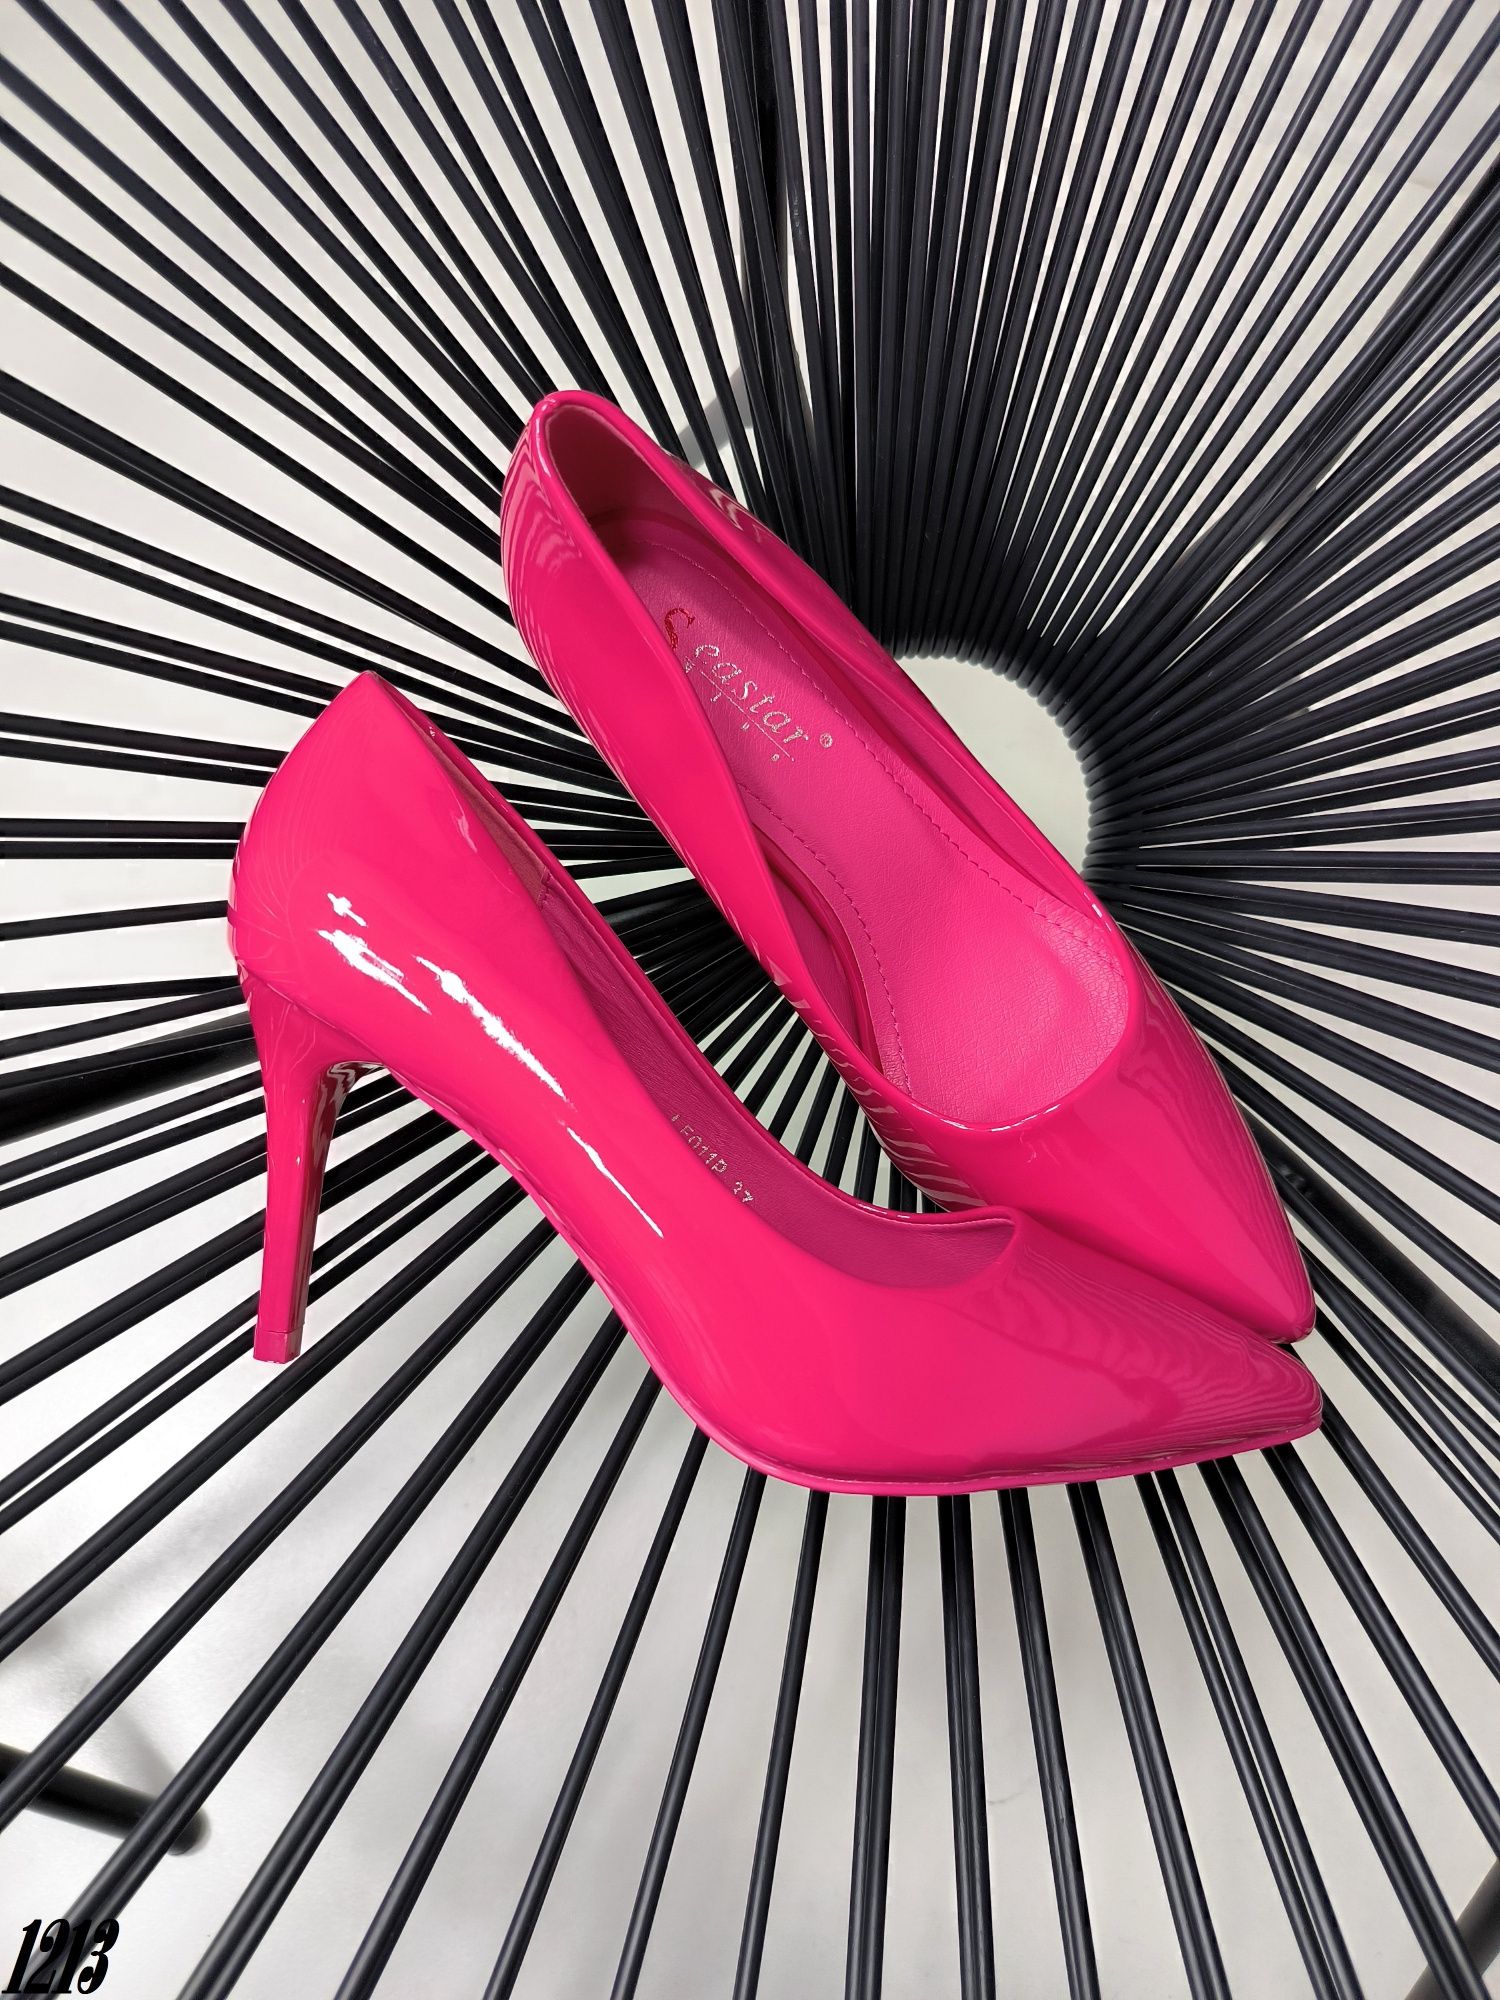 Лодочки рожеві фуксія 37,39 туфлі жіночі лодочки розовые женские туфли